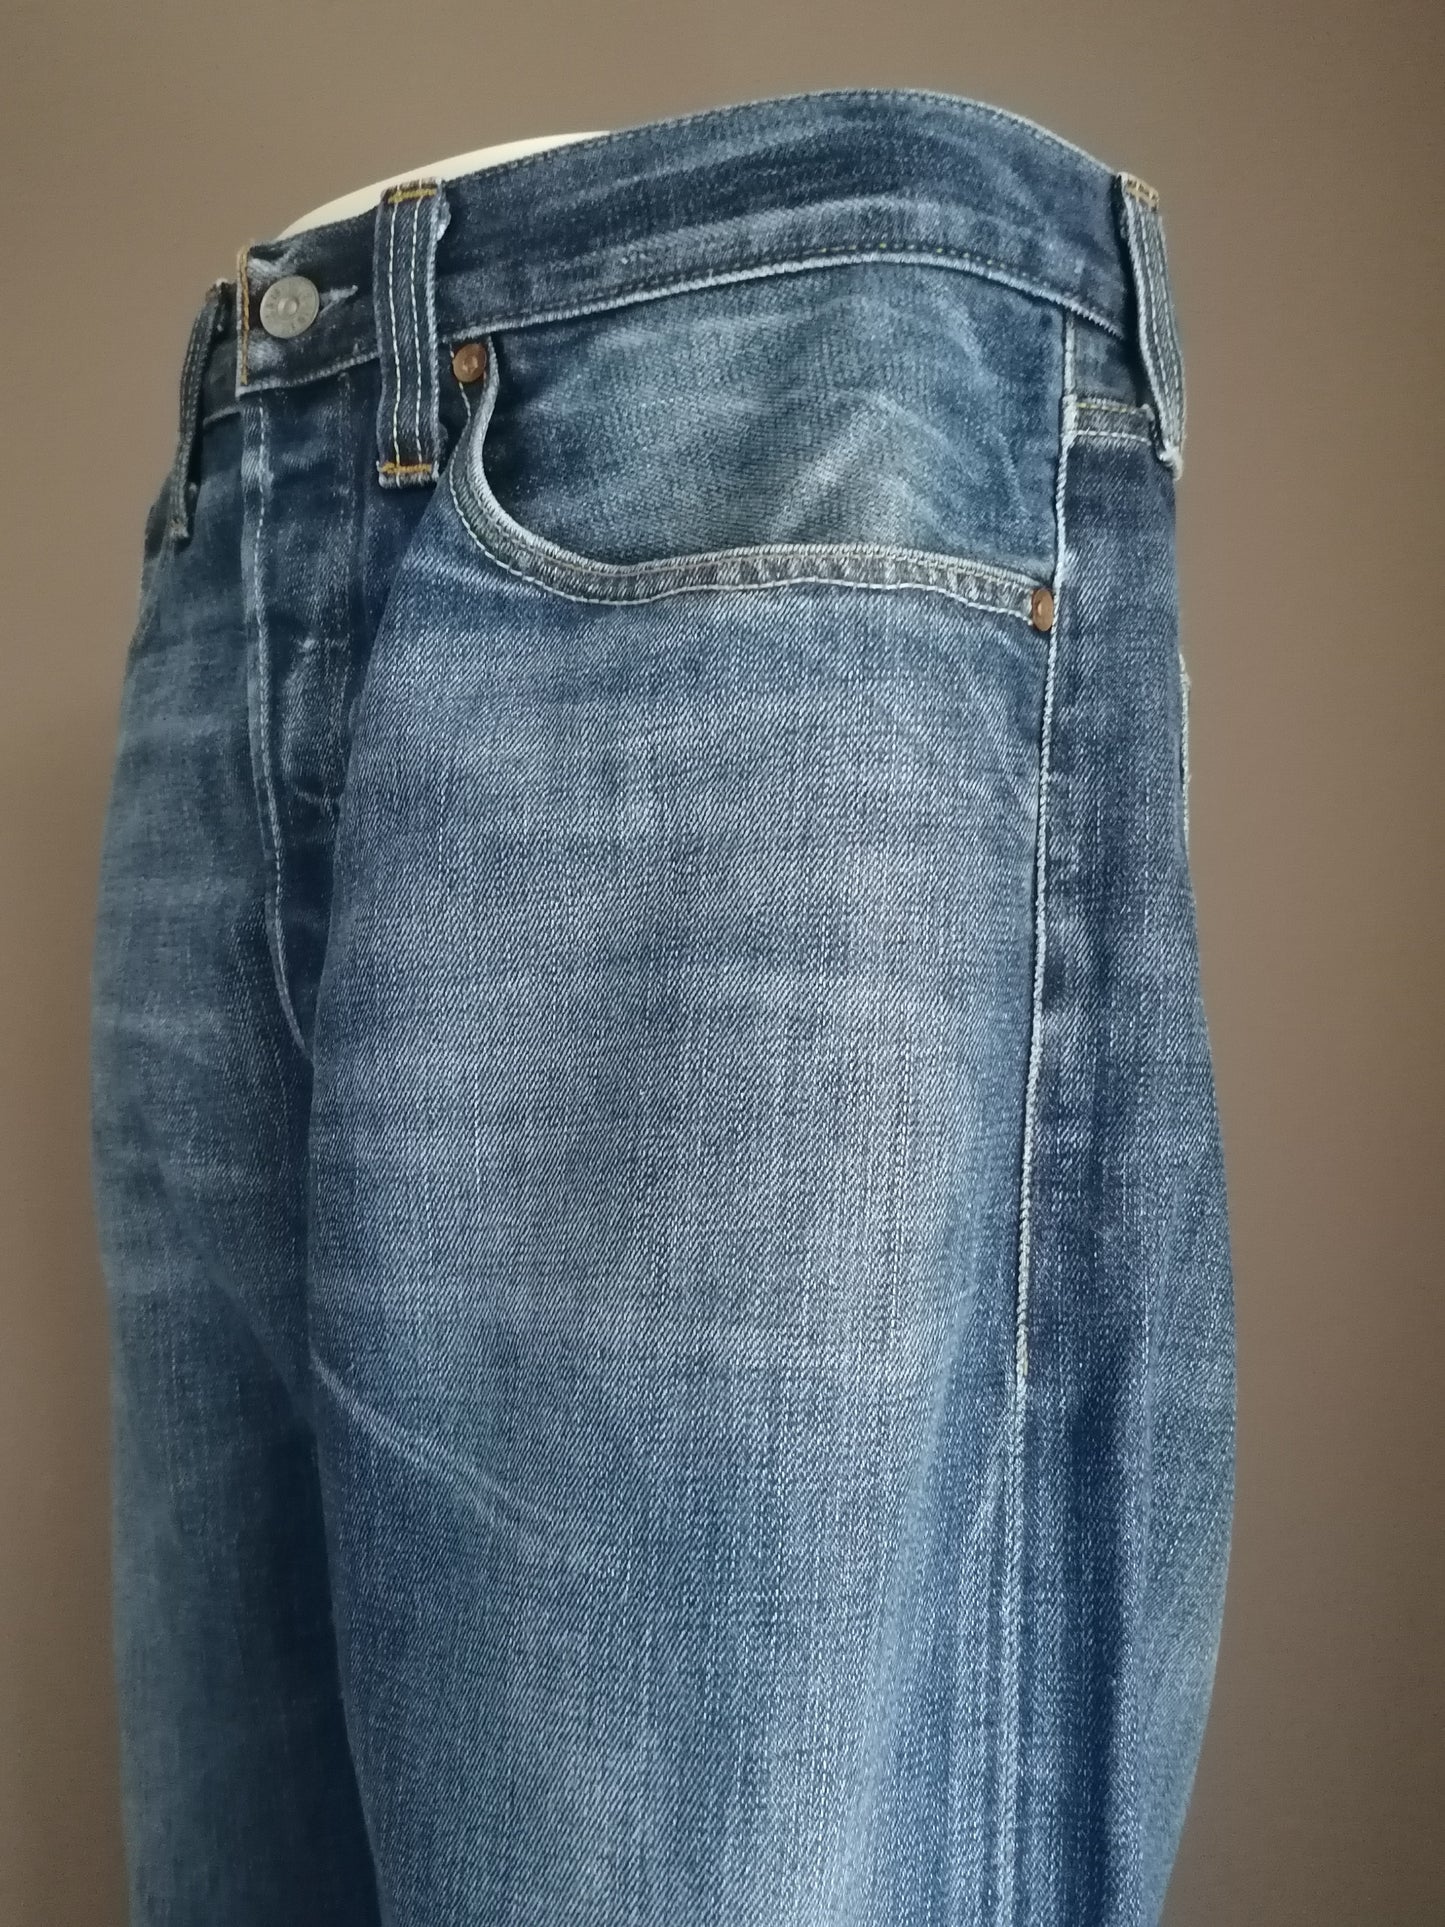 Levi's jeans. Blue colored. W34 - L28.